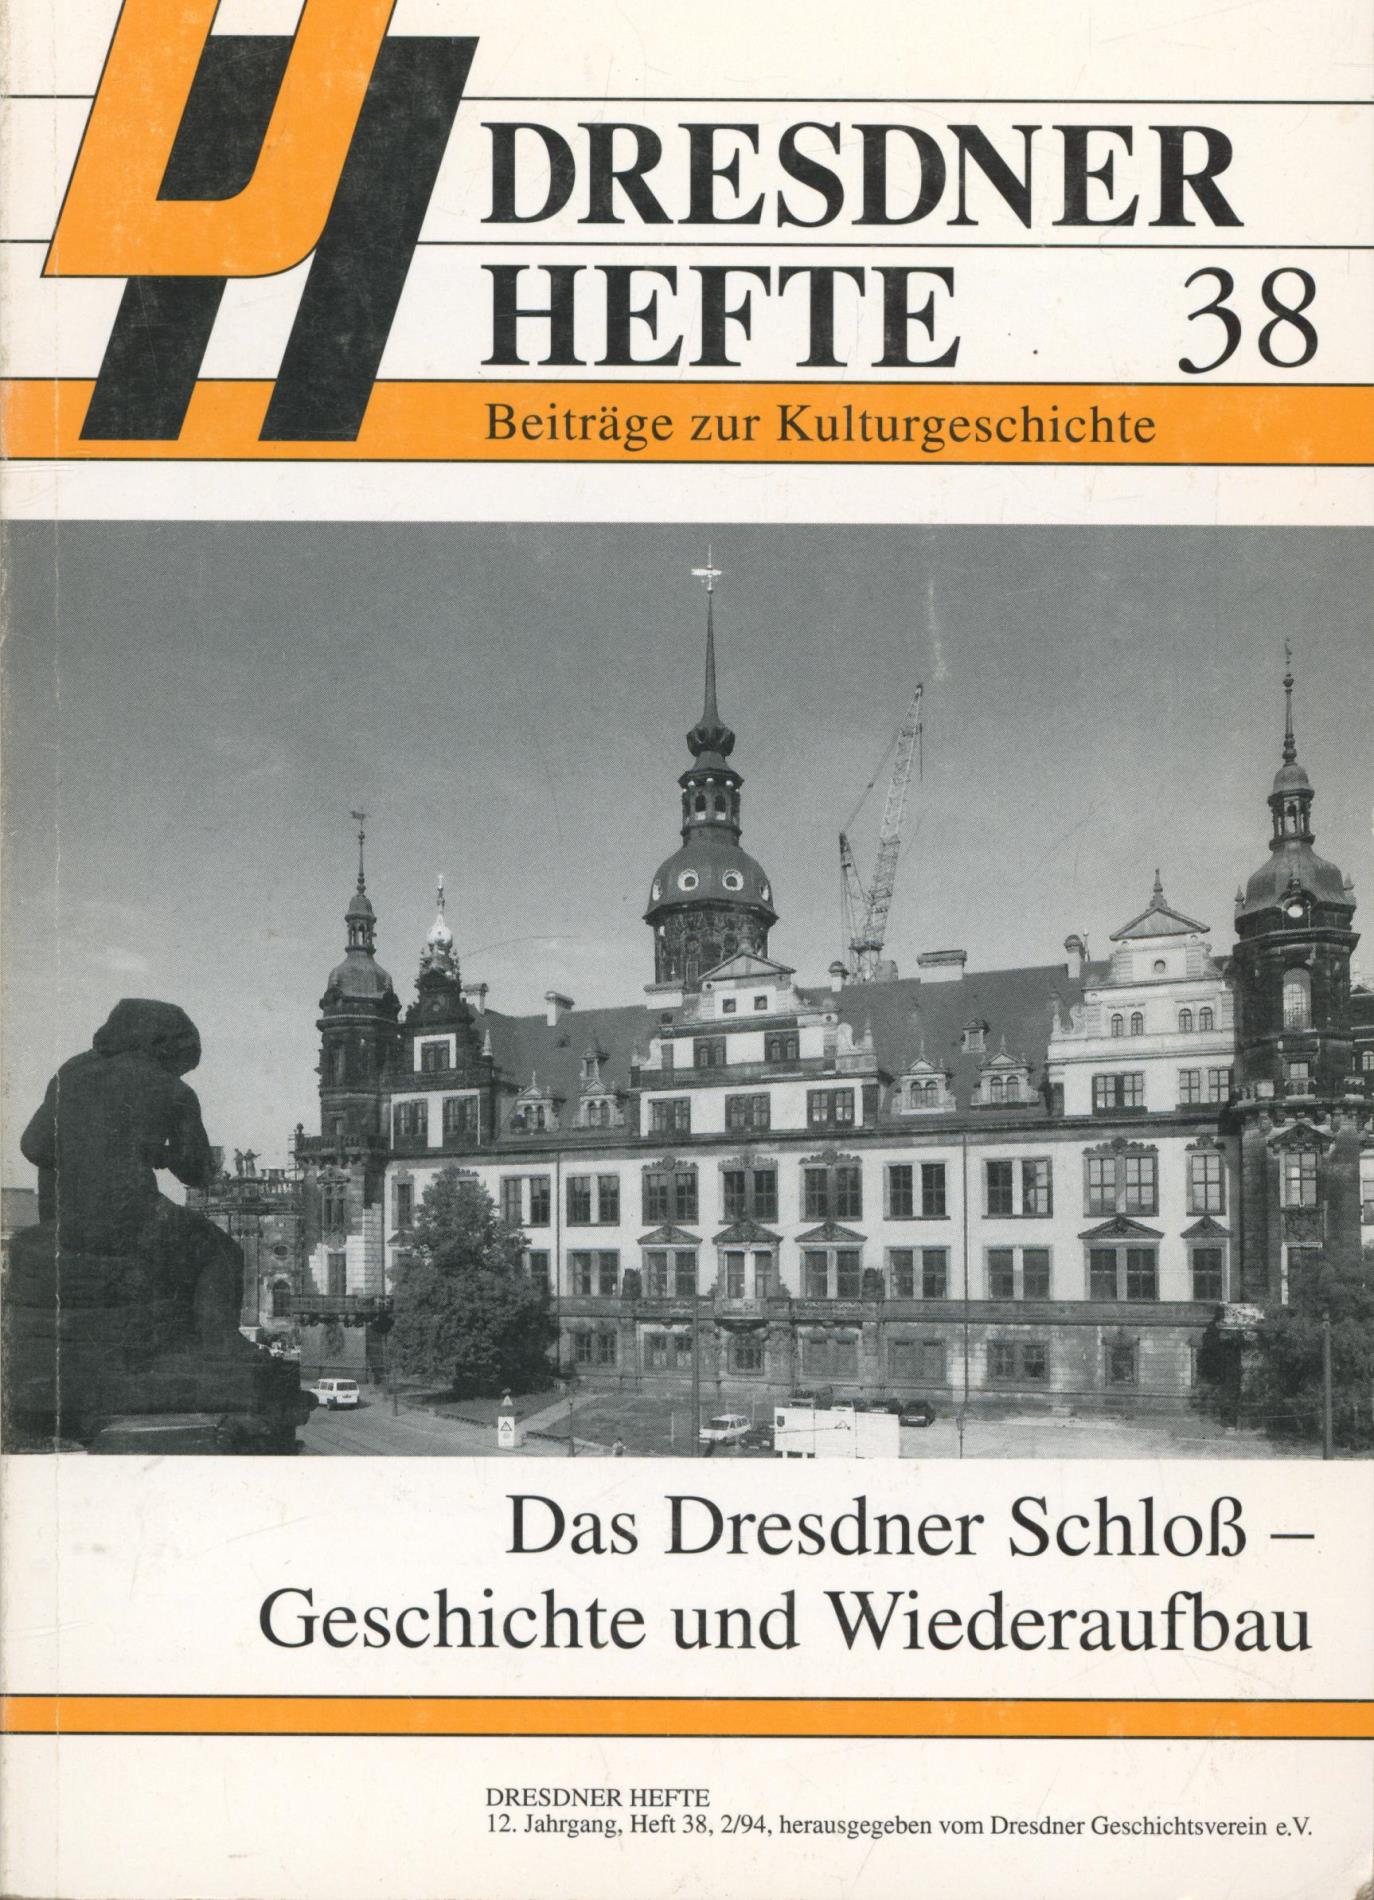 Das Dresdner Schloß - Geschichte und Wiederaufbau,Dresdner Hefte 38